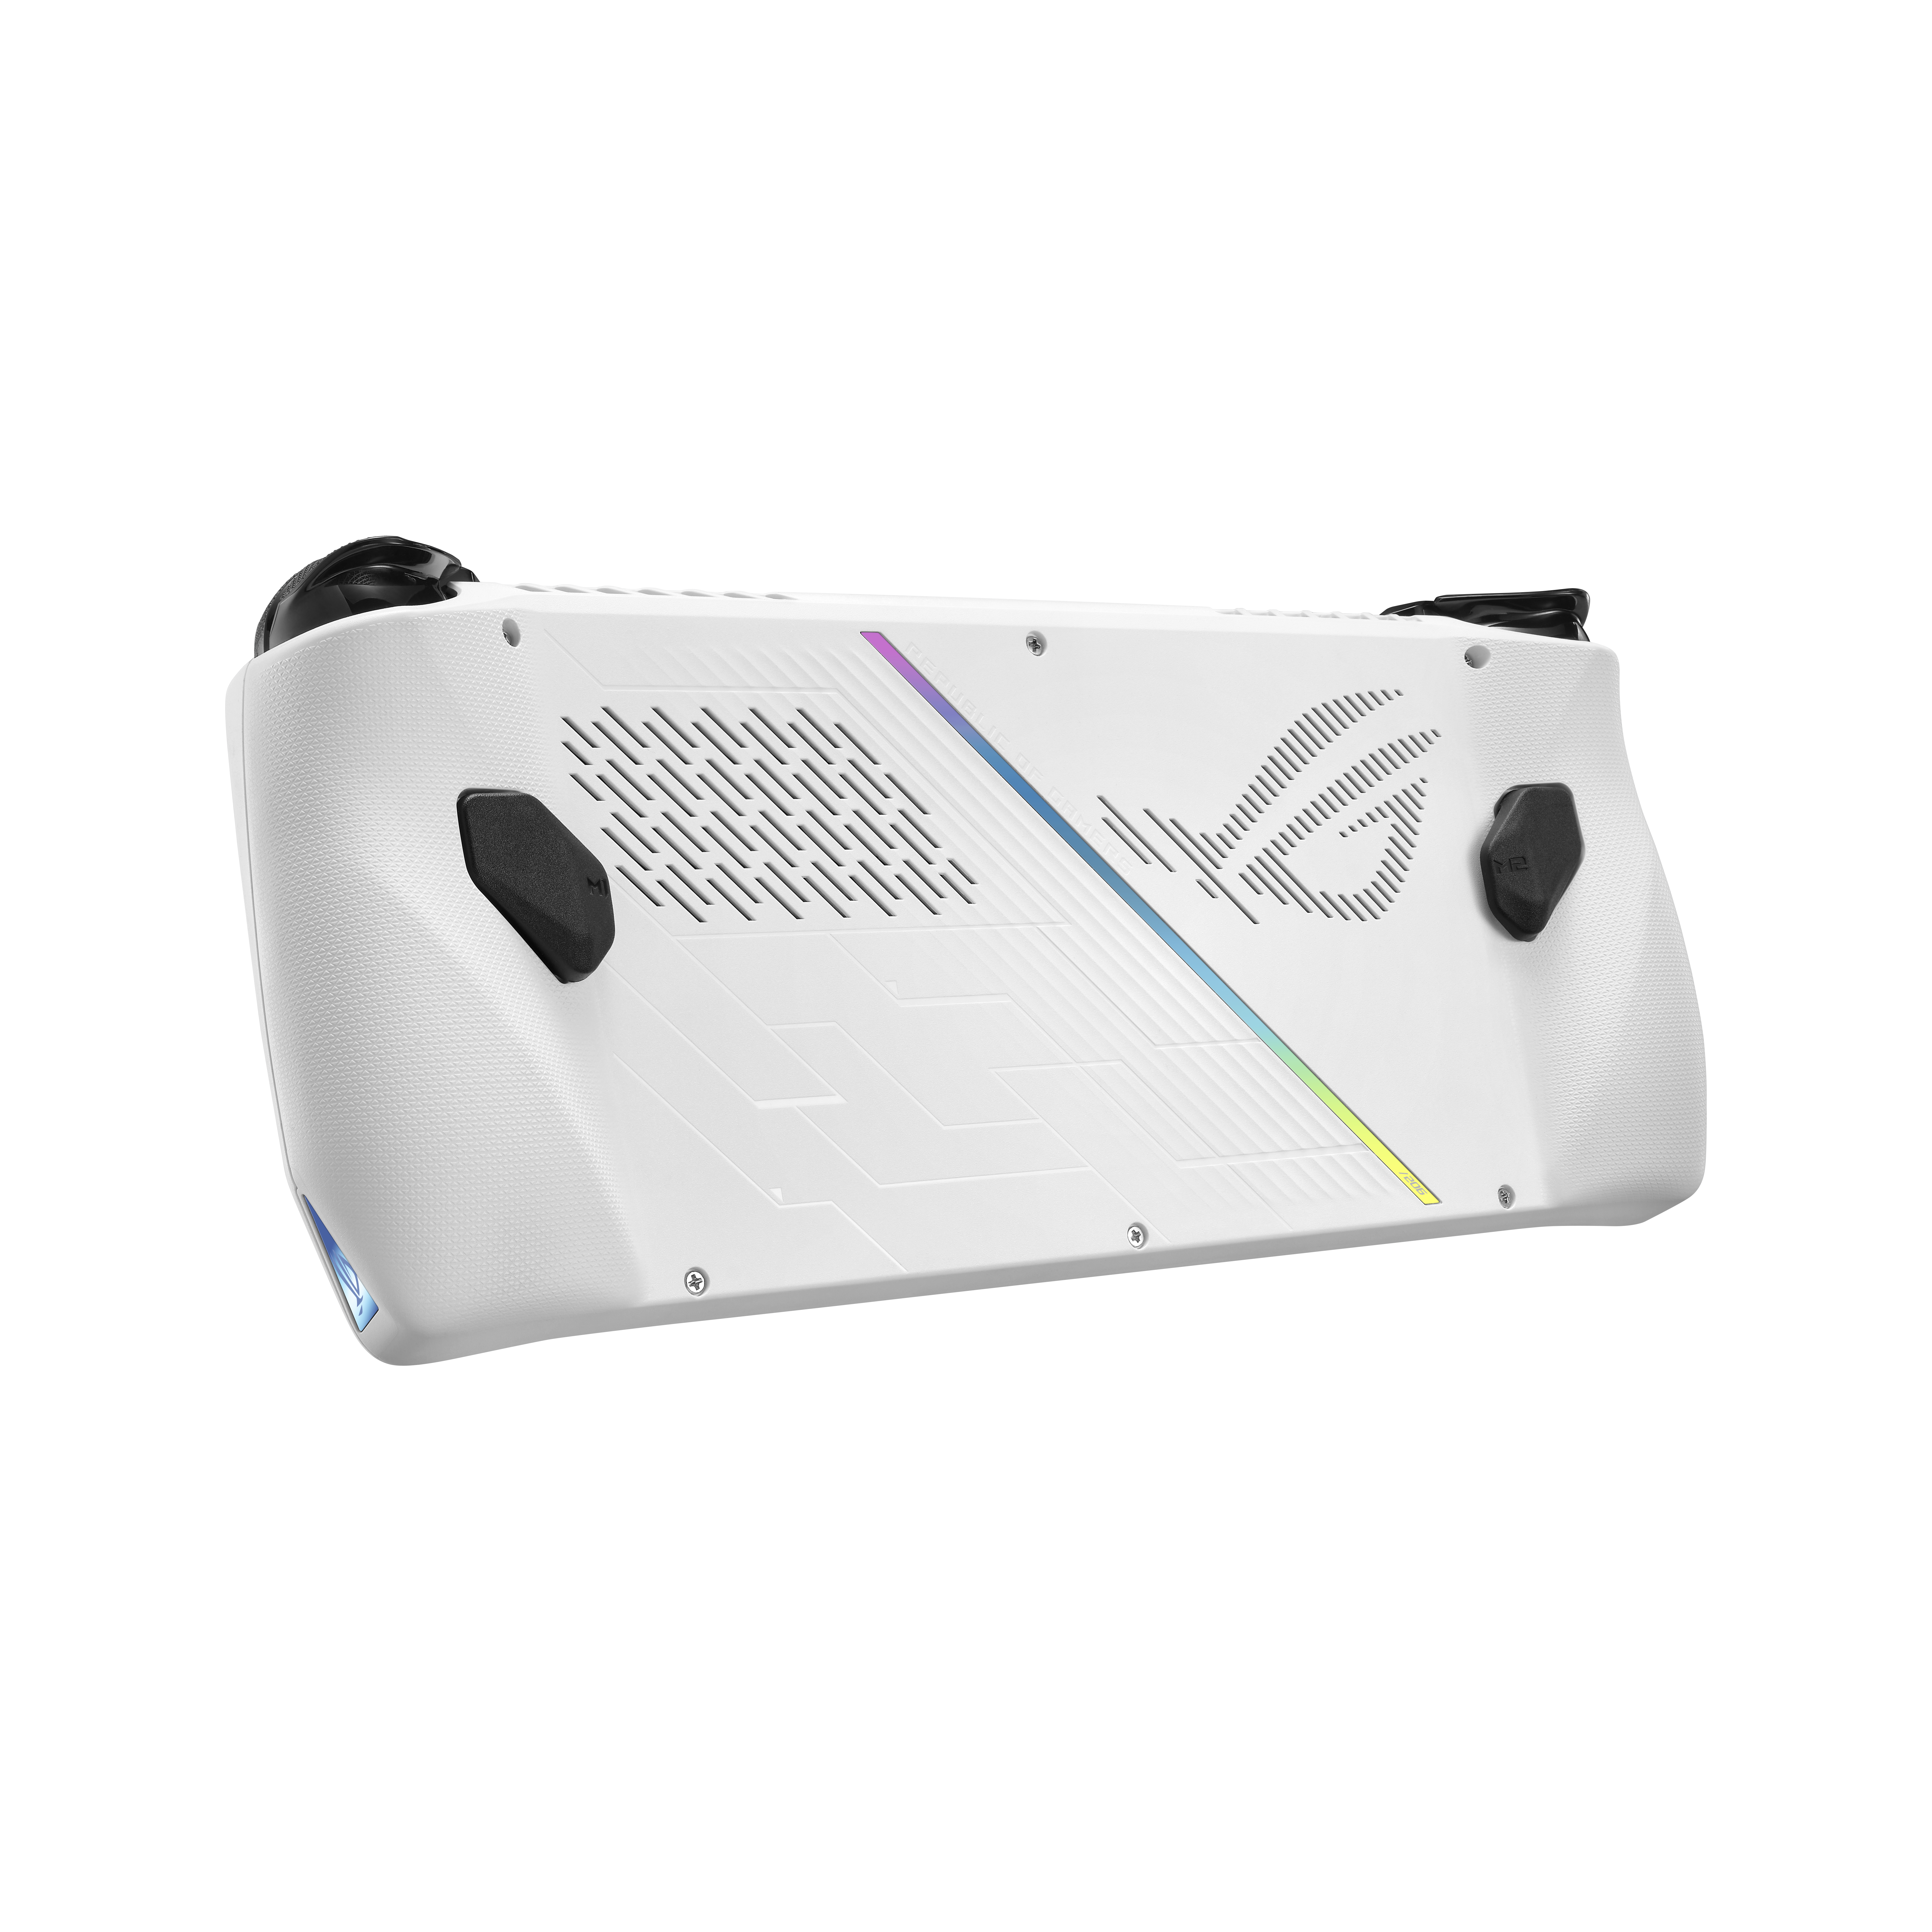 La consola de Asus contará con un panel de 120 Hz de tasa de refresco. (Asus)